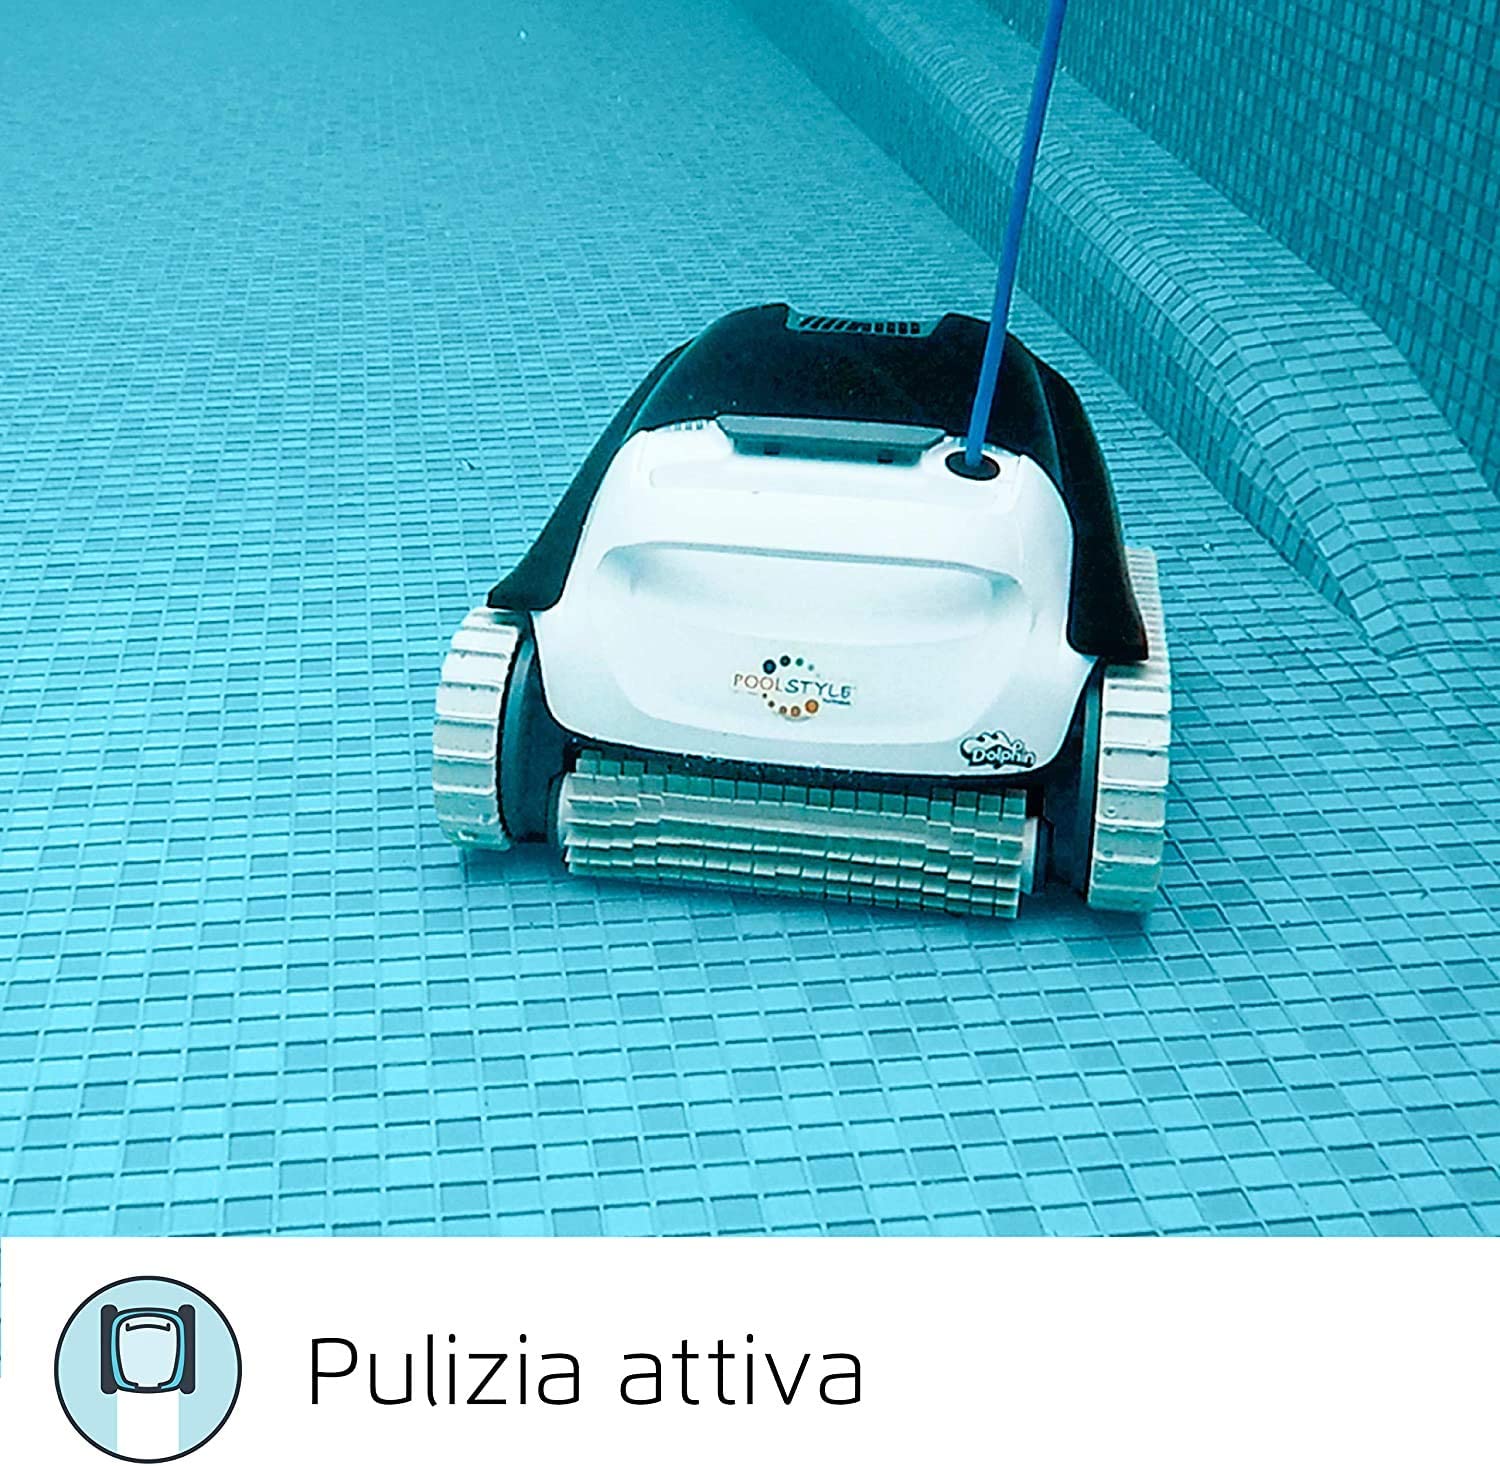 Mejores robots limpiafondos de piscinas en Las Palmas - Piscinas Las Palmas